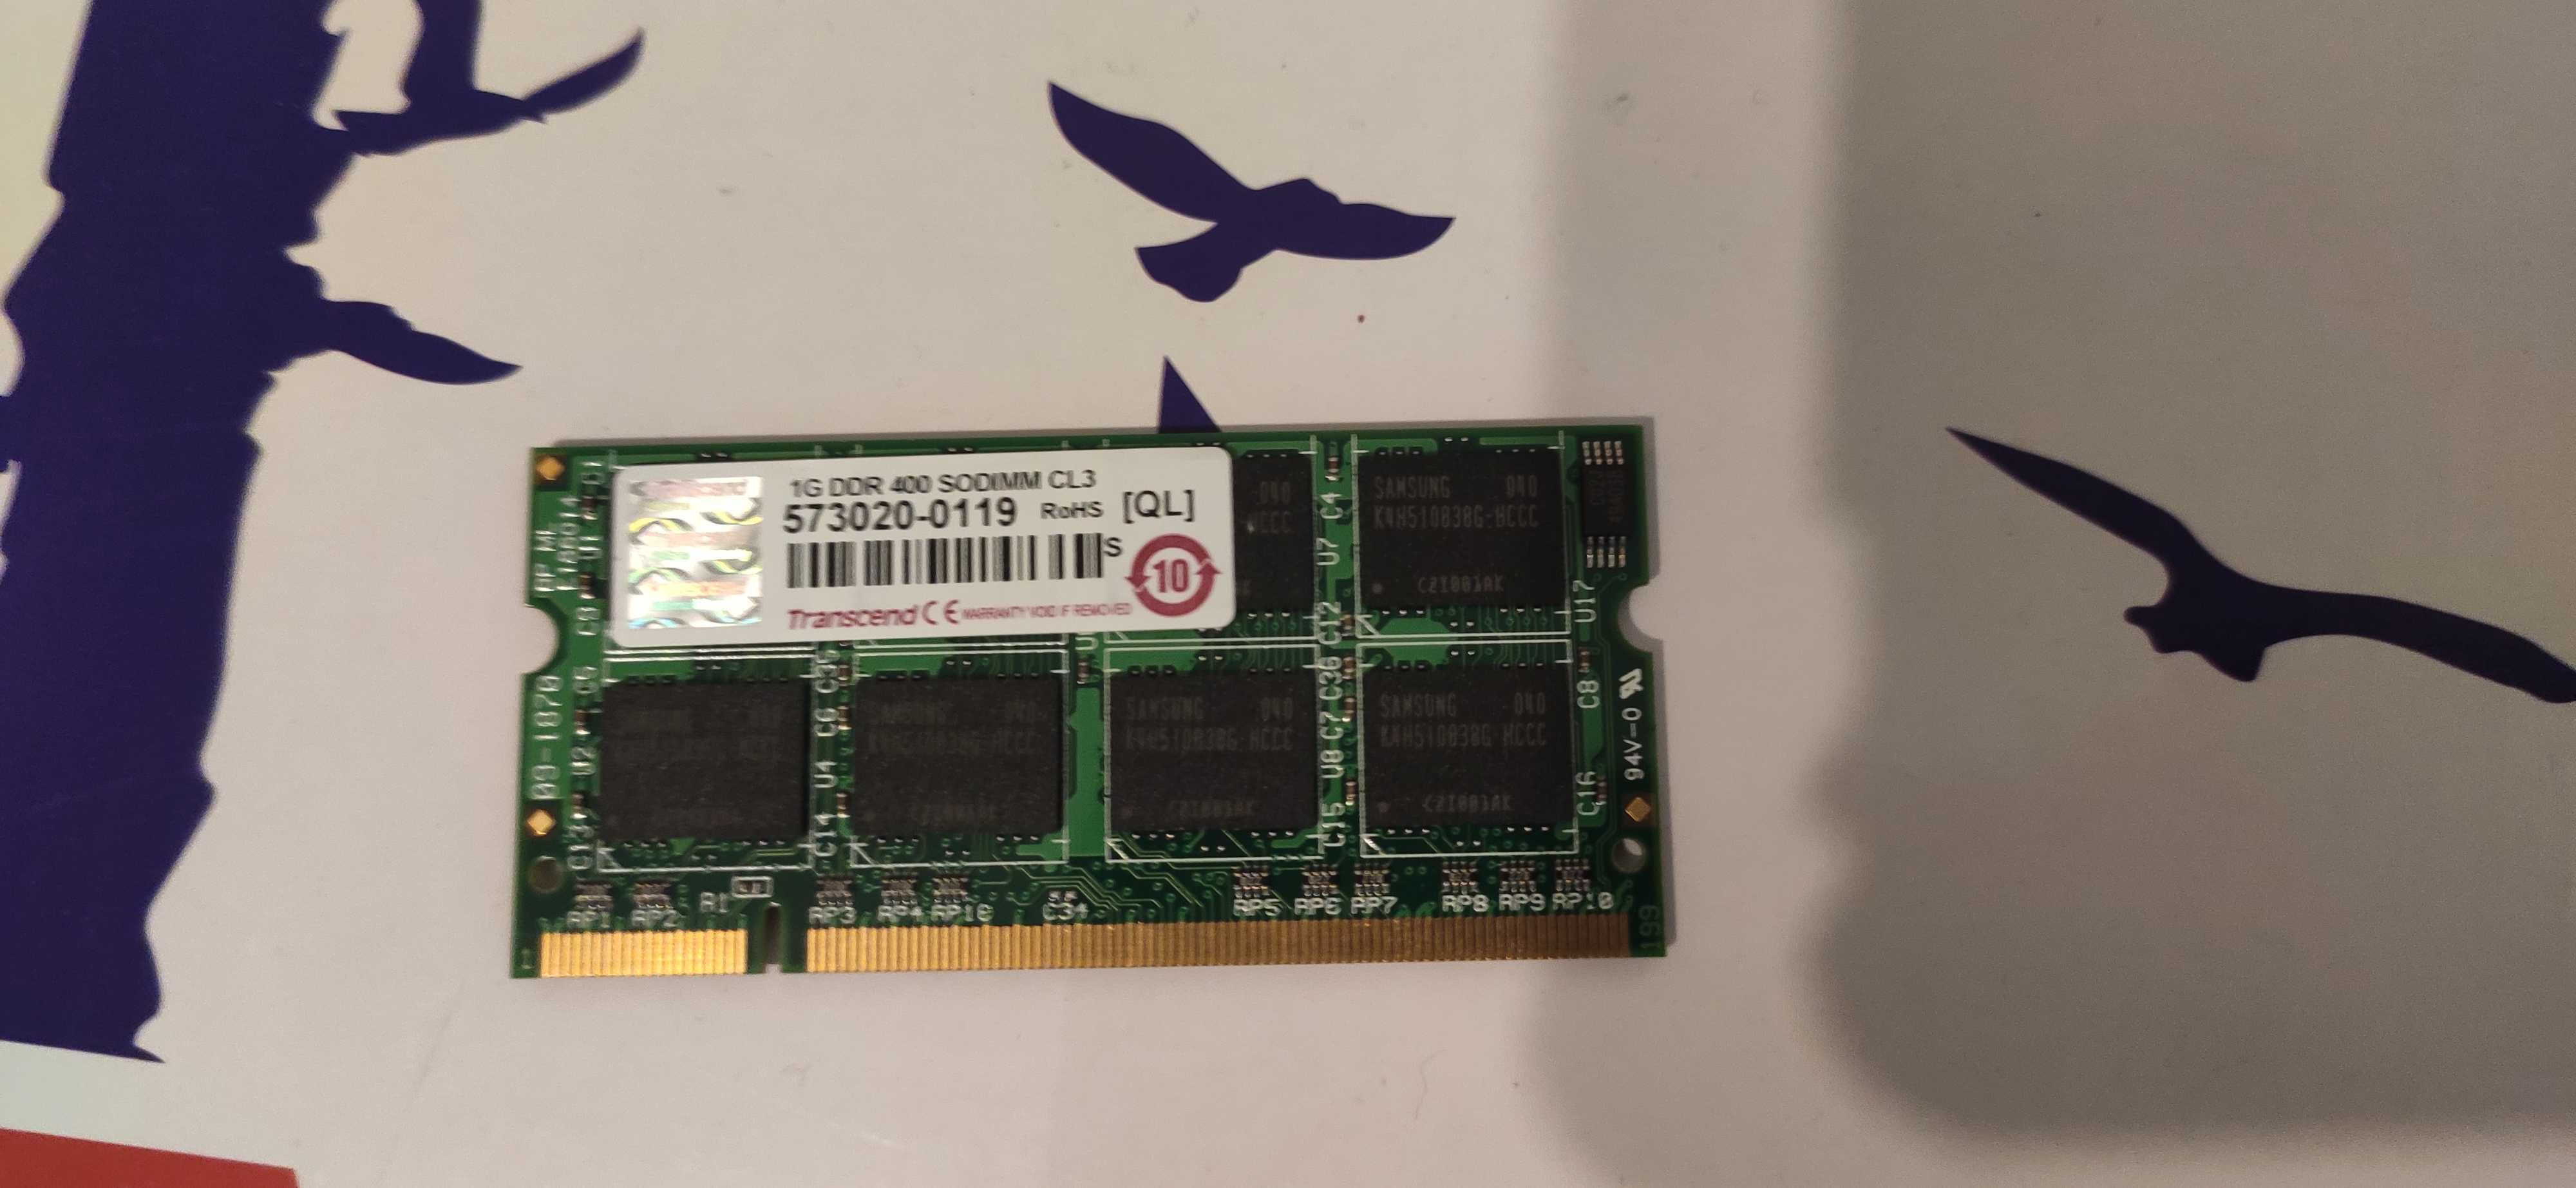 SODIMM DDR 400 1gb Transcend память для ноутбука